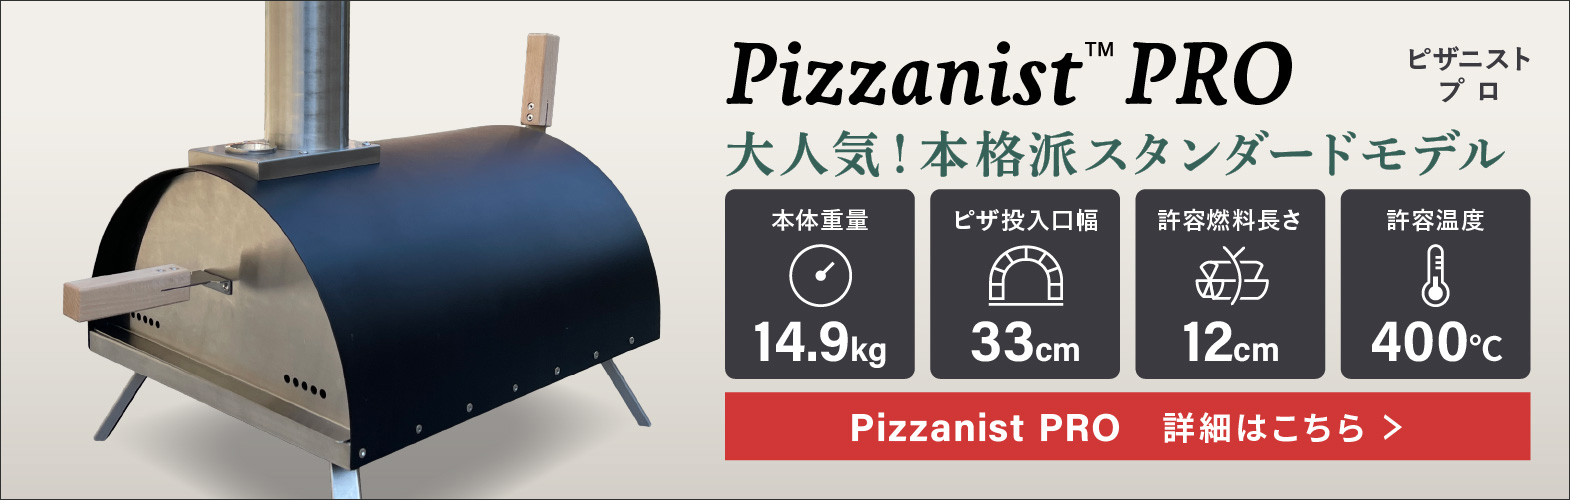 ポータブルピザ窯 Pizzanist PRO